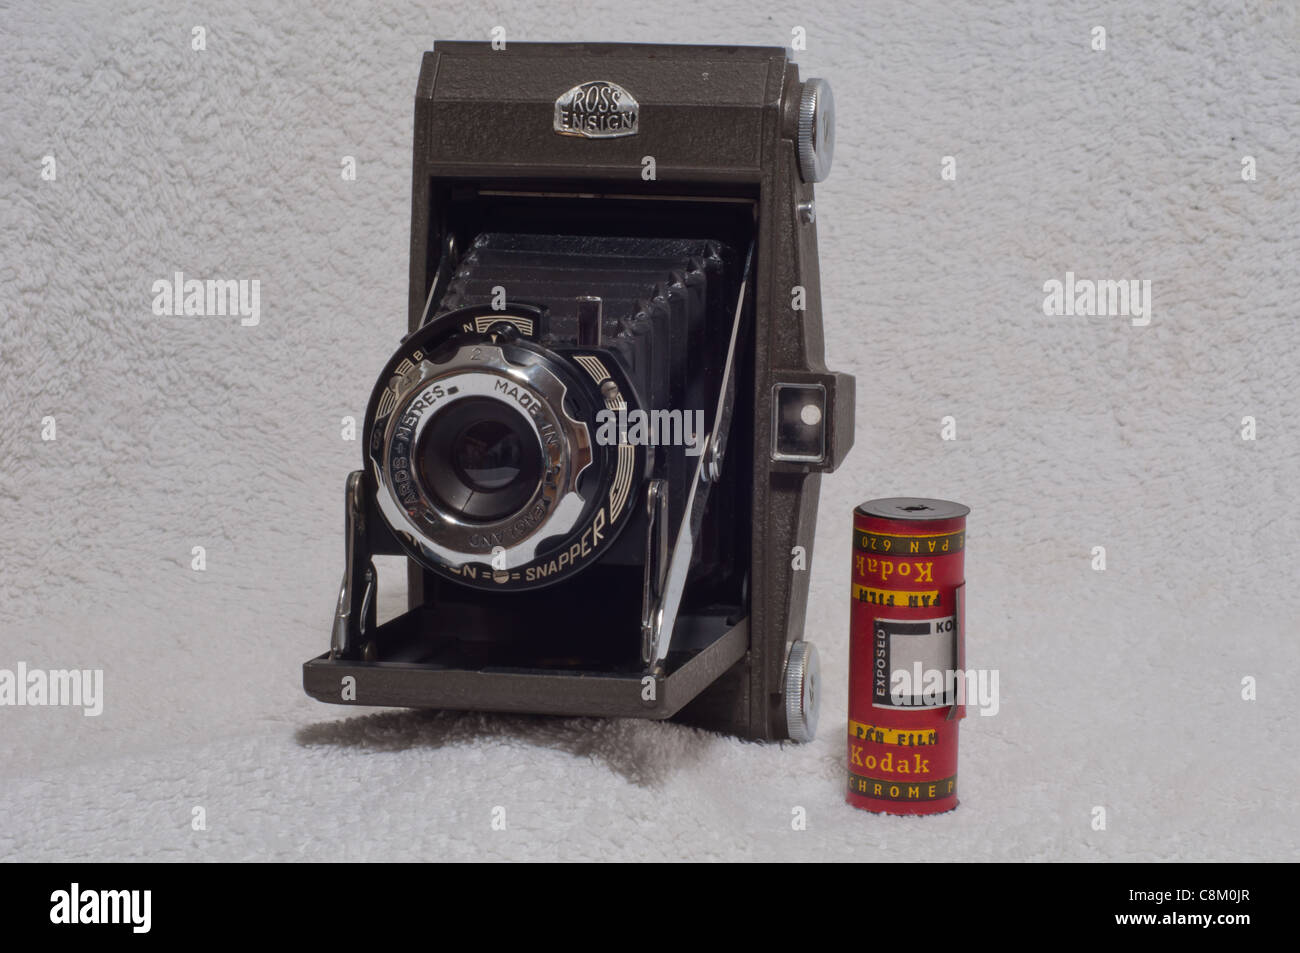 Ross Ensign Selfix Schnapper-Faltschaltung mit Kodak-Rollenfilm NP.620 2 1/4 x 3 1/4 Zoll Stockfoto